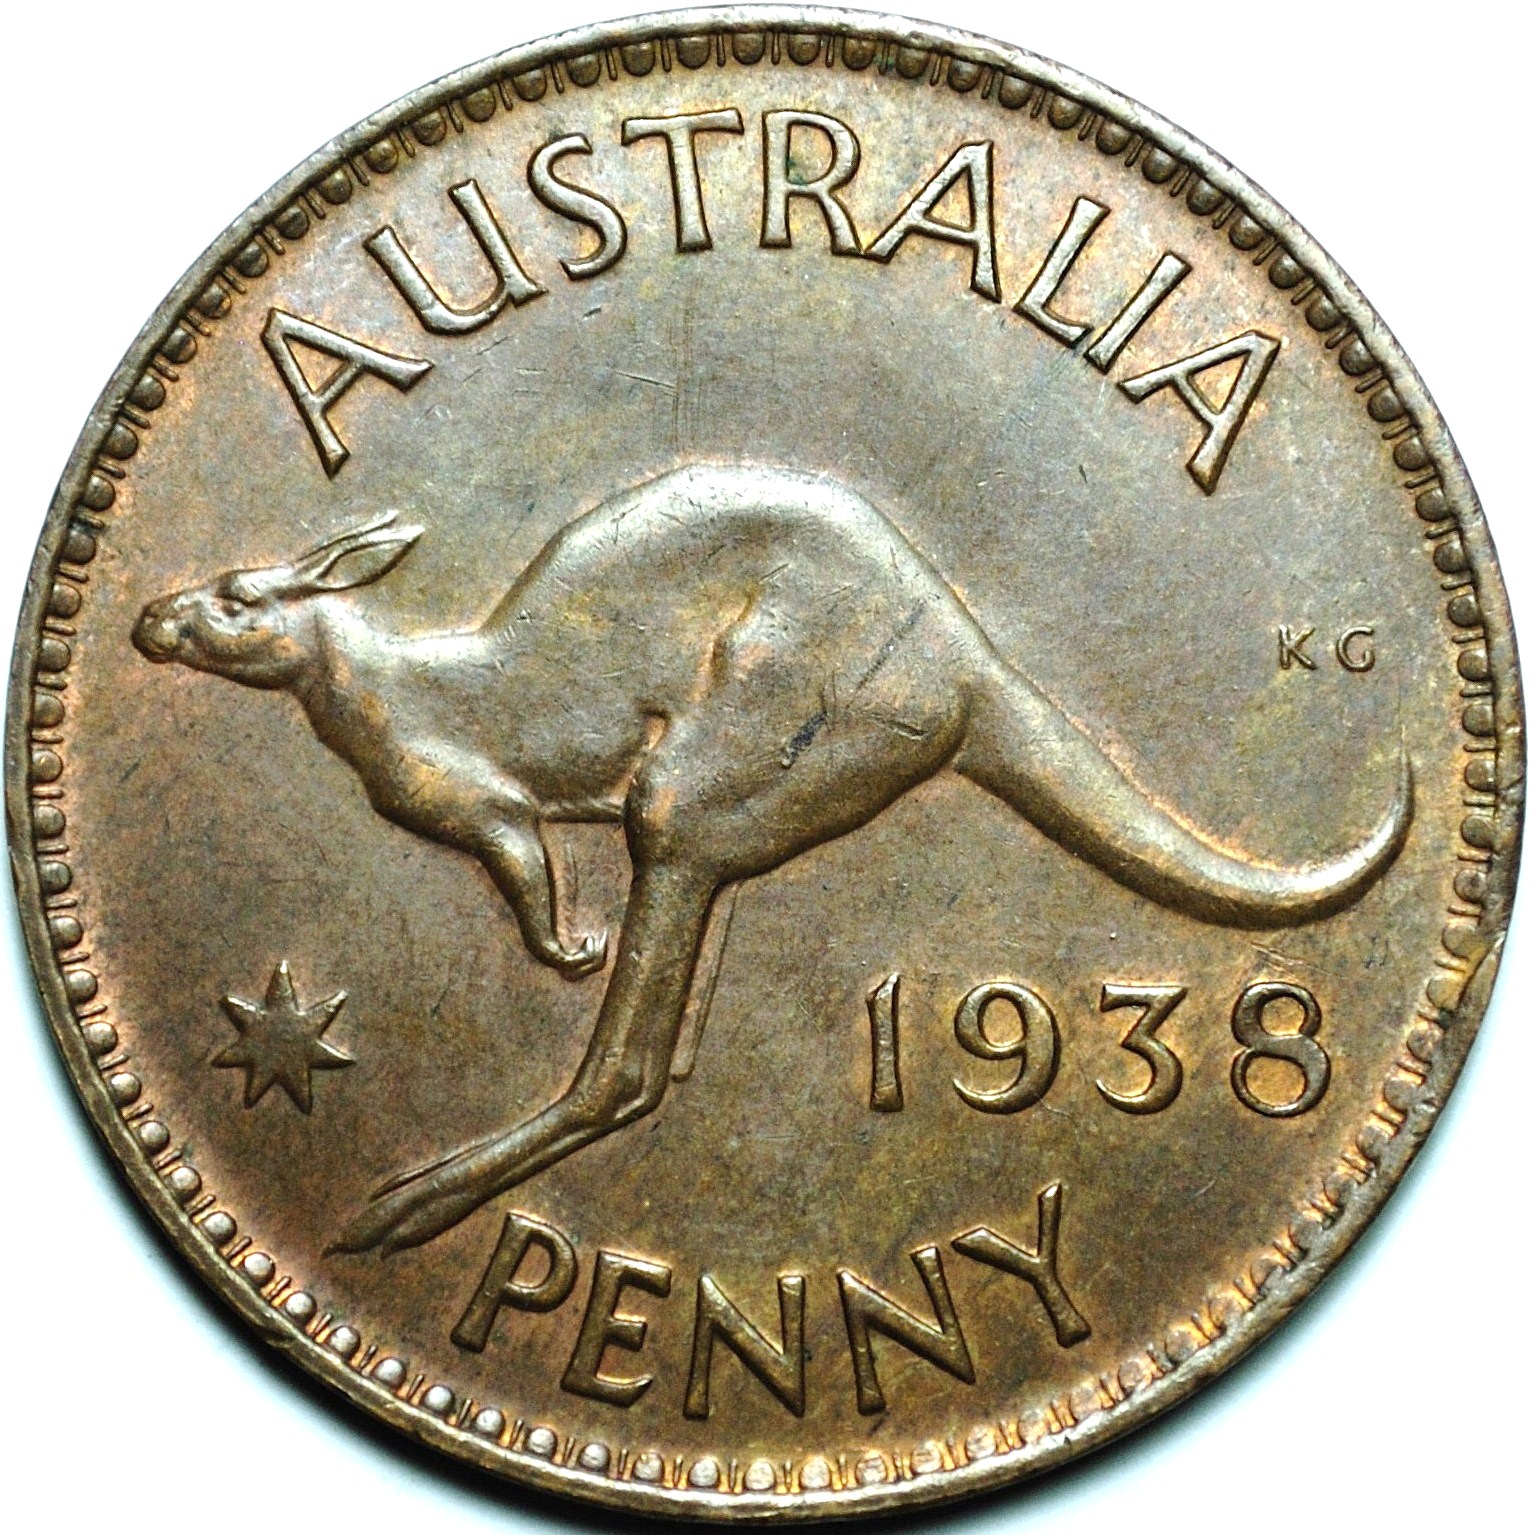 1938 Australian penny reverse